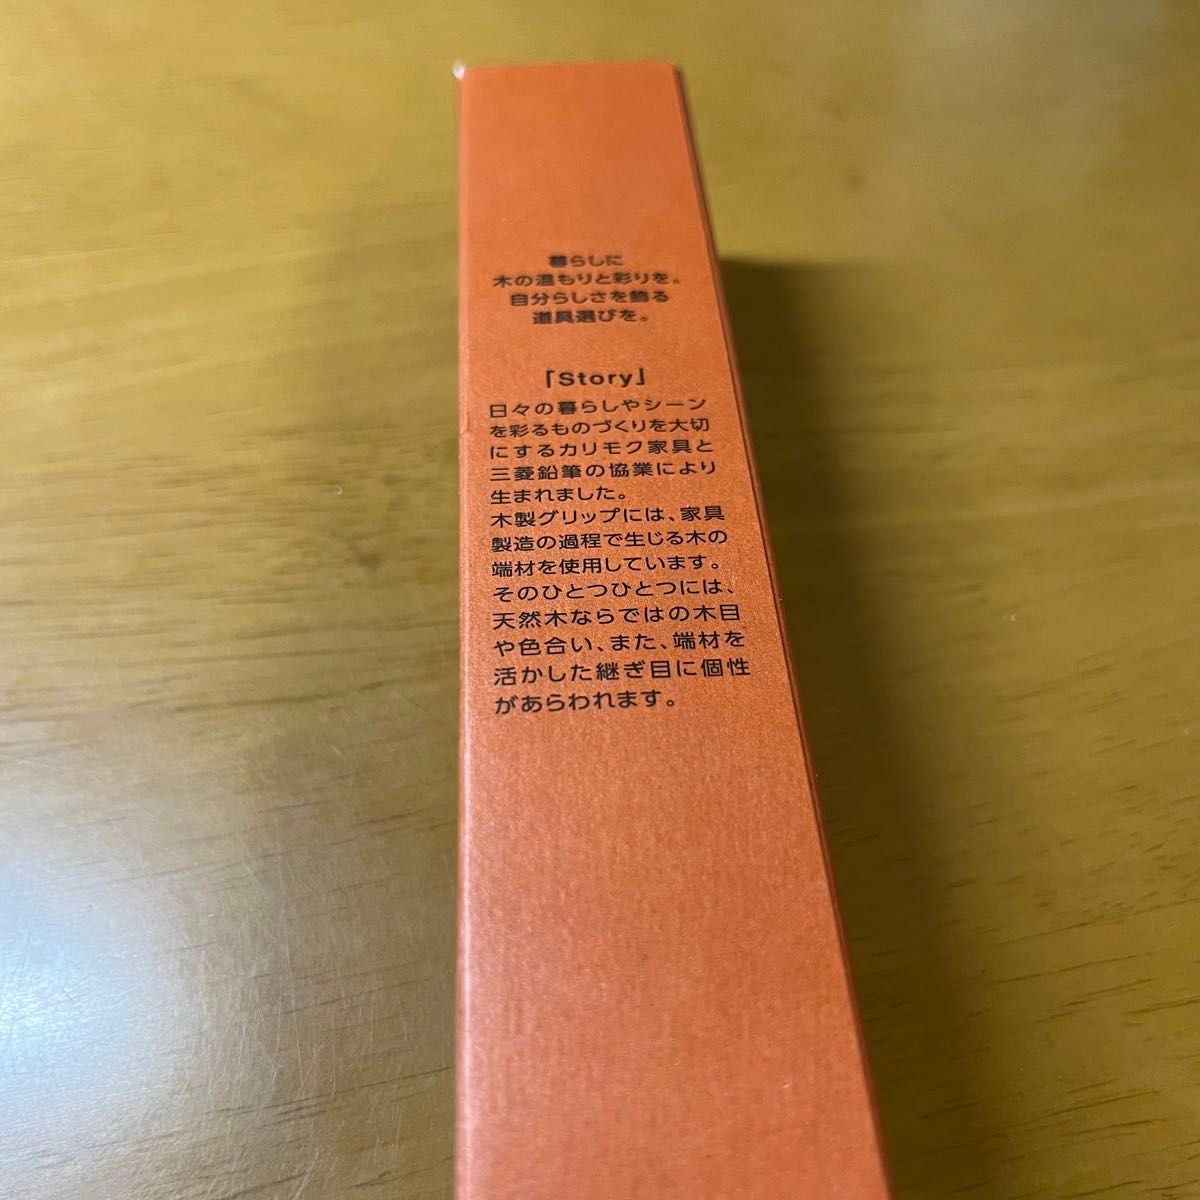 【新品未使用】uni ジェットストリーム × karimoku 多機能ペン 4&1 サンセットオレンジ